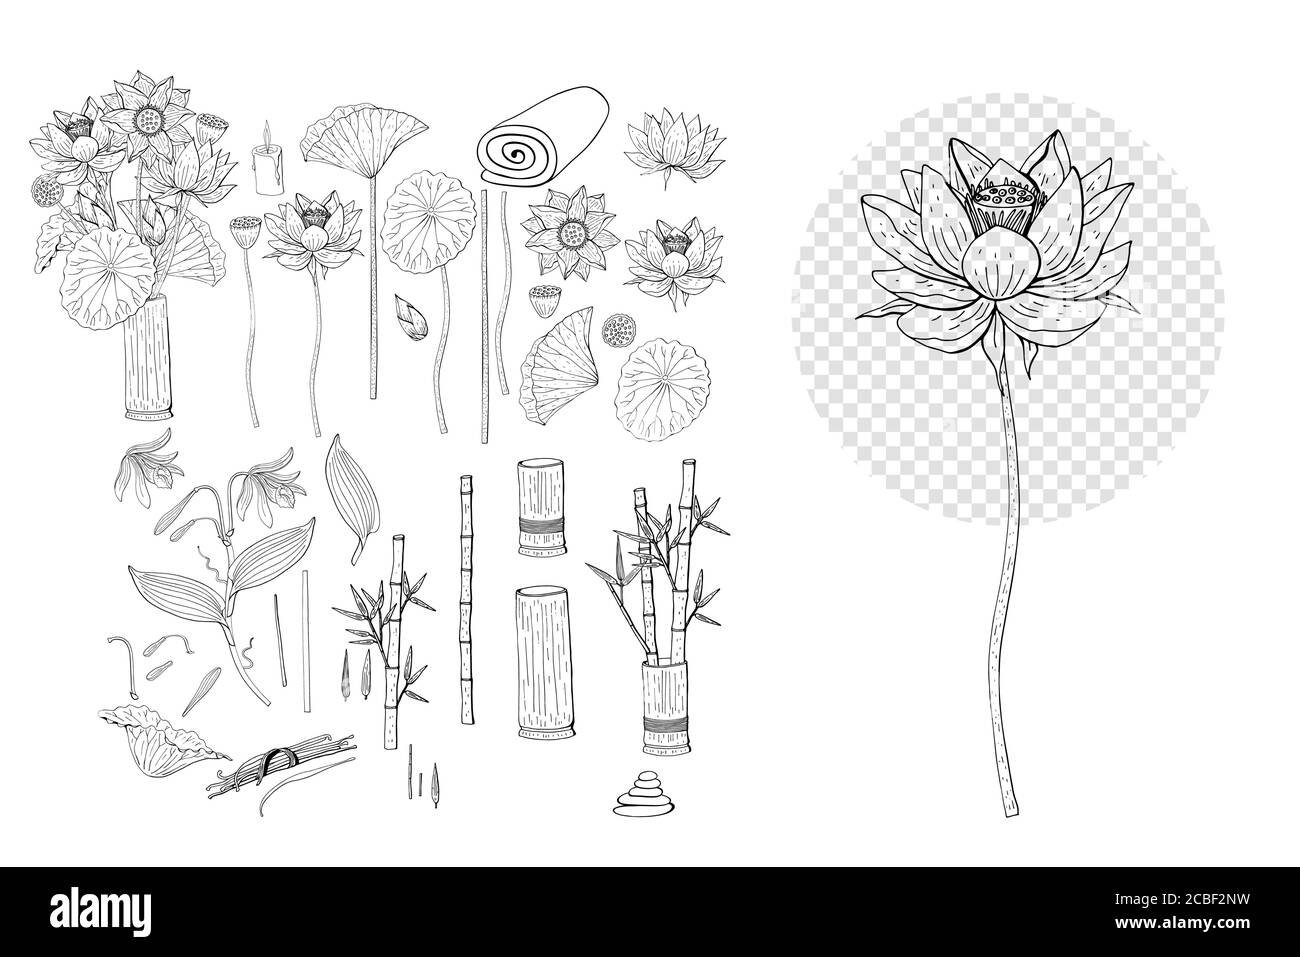 Collection de fleurs de lotus et de vanille dessinées à la main. Éléments à motif fleuri. Isolé sur fond blanc. Vecteur Illustration de Vecteur